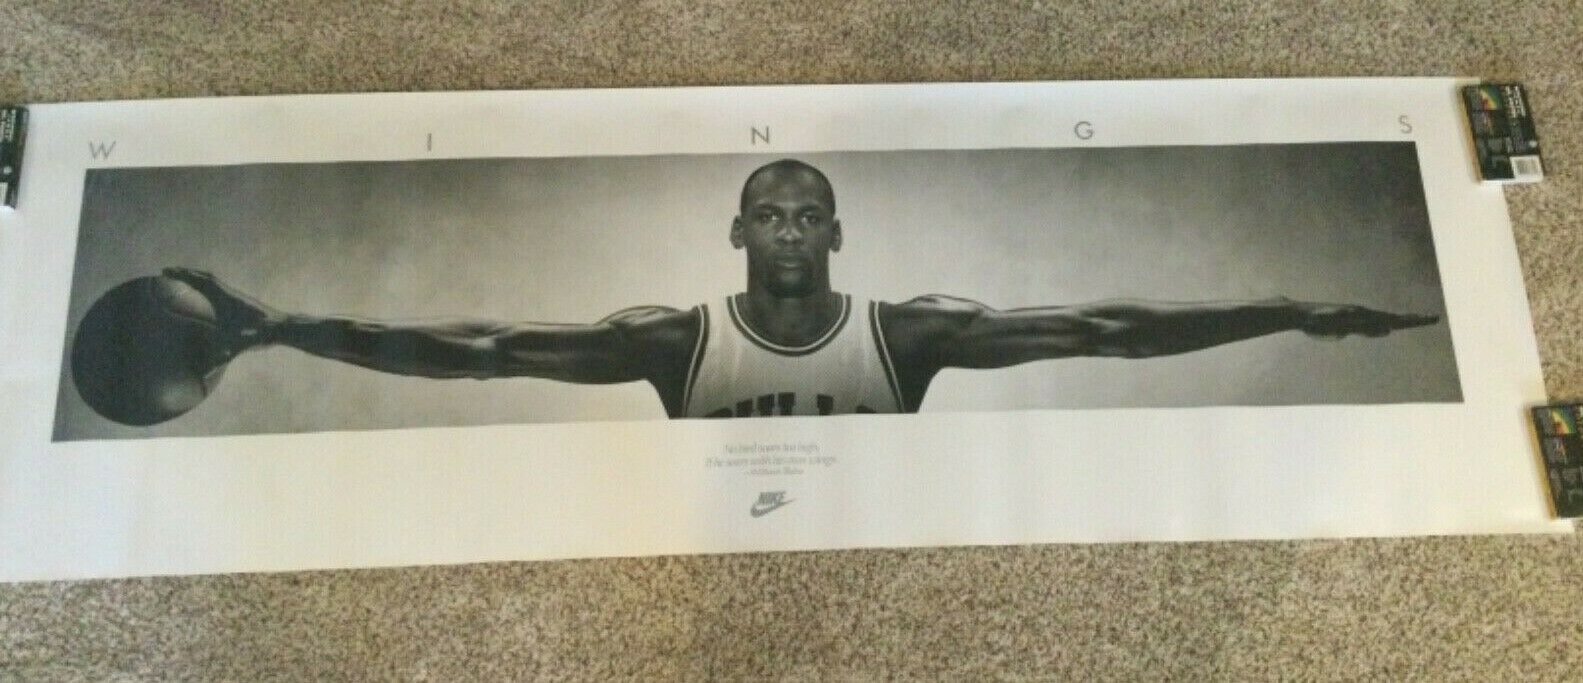 Original 1989 Michael Jordan Nike Poster "wings" Nos 24 X 76 1st Print!!!